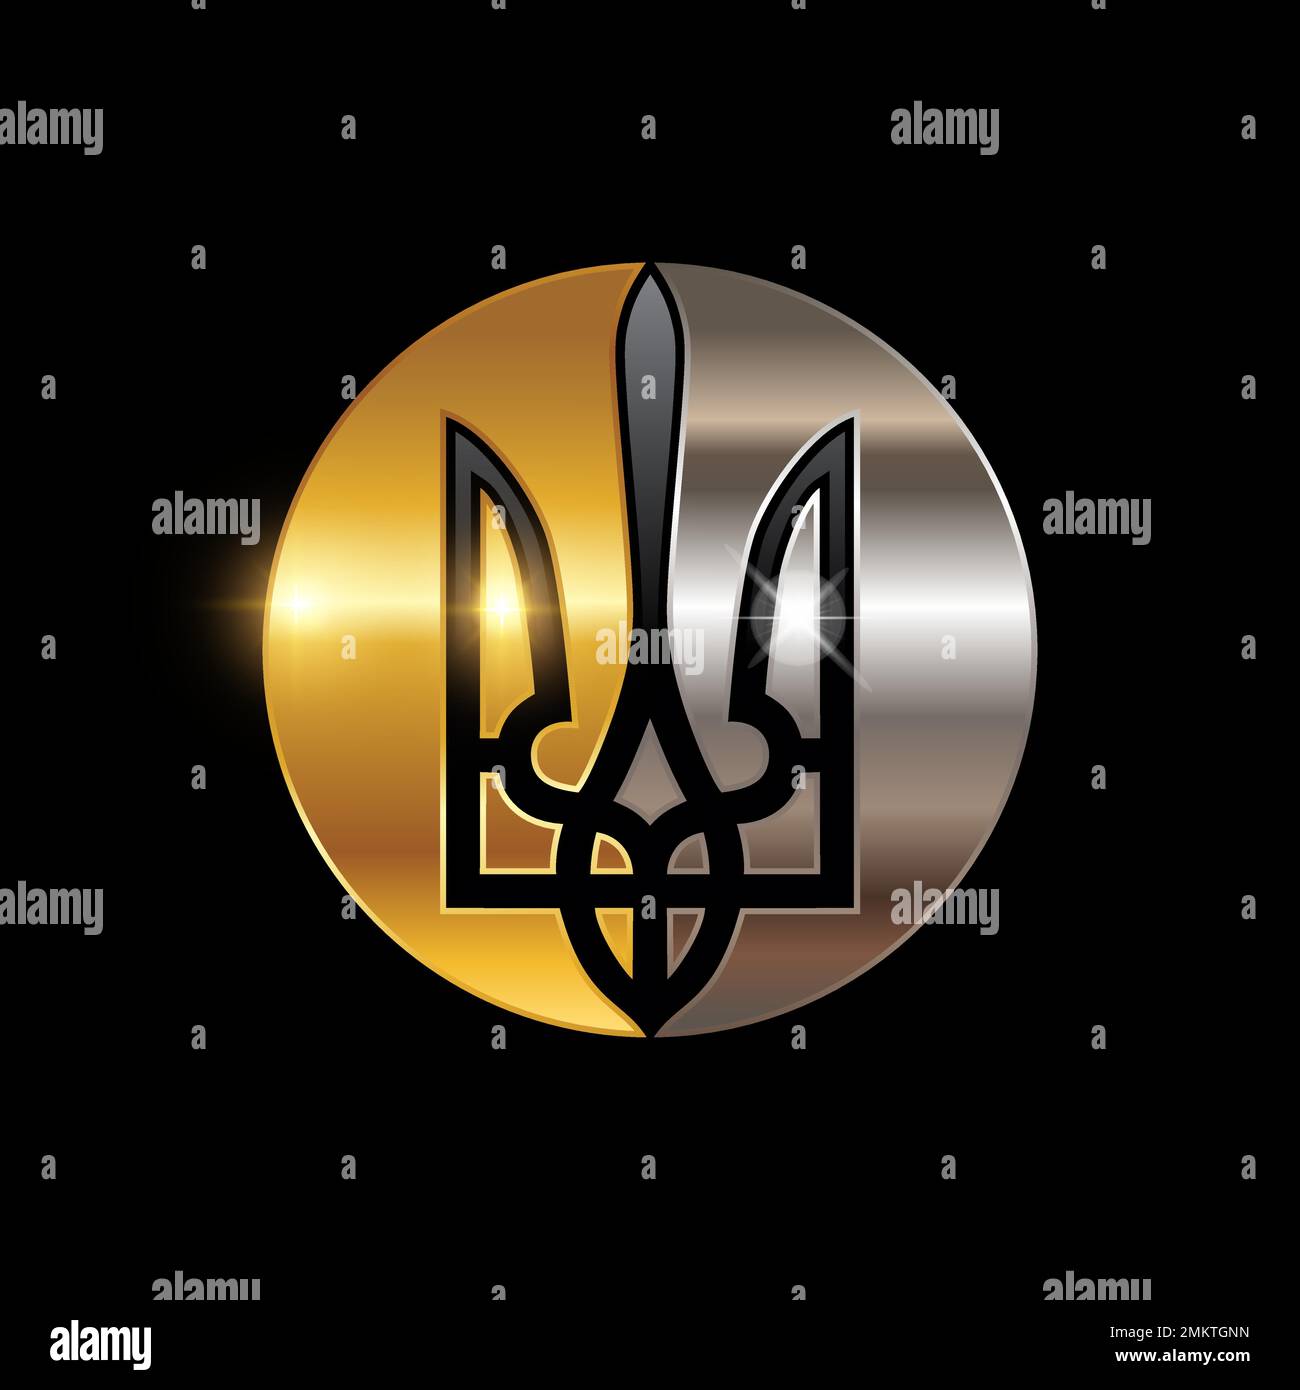 Illustration vectorielle du logo ukrainien Trident Emblem Ukraine Tryzub Gold et Silver Color Illustration de Vecteur